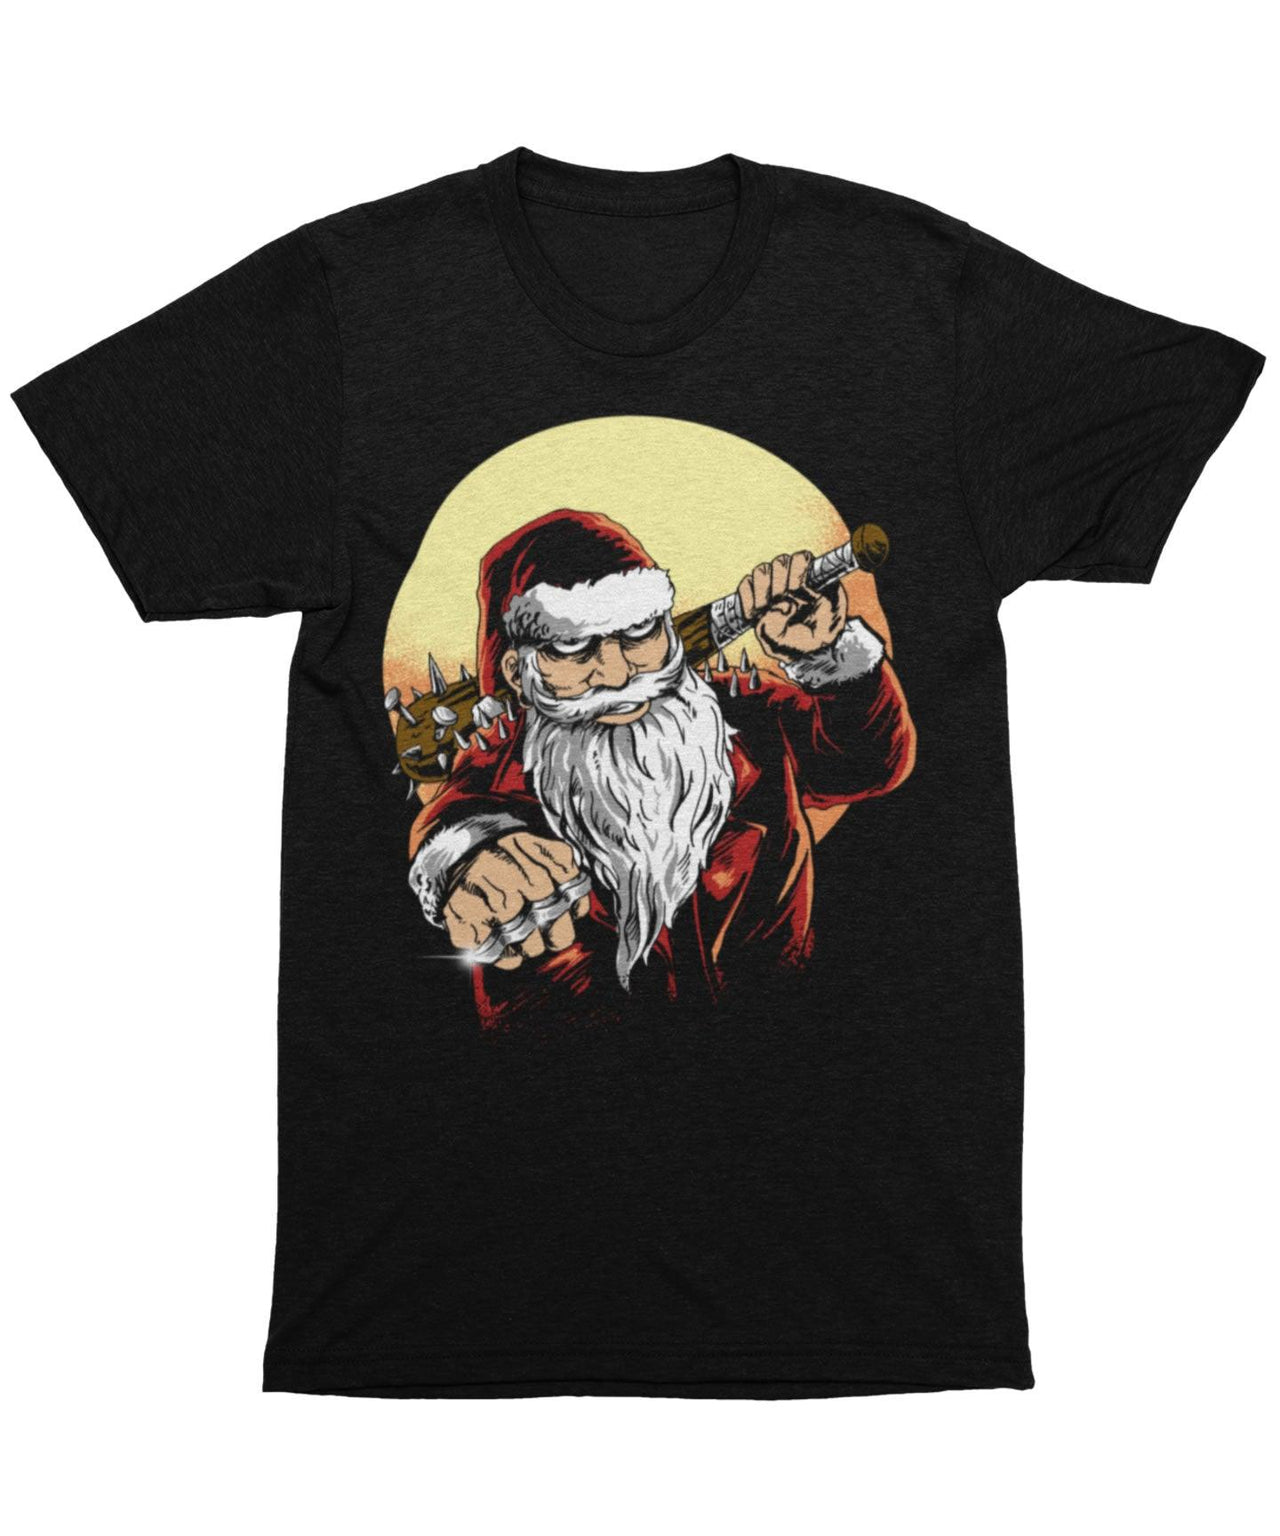 Bad Boy Santa Unisex Christmas Unisex T-Shirt For Men And Women 8Ball